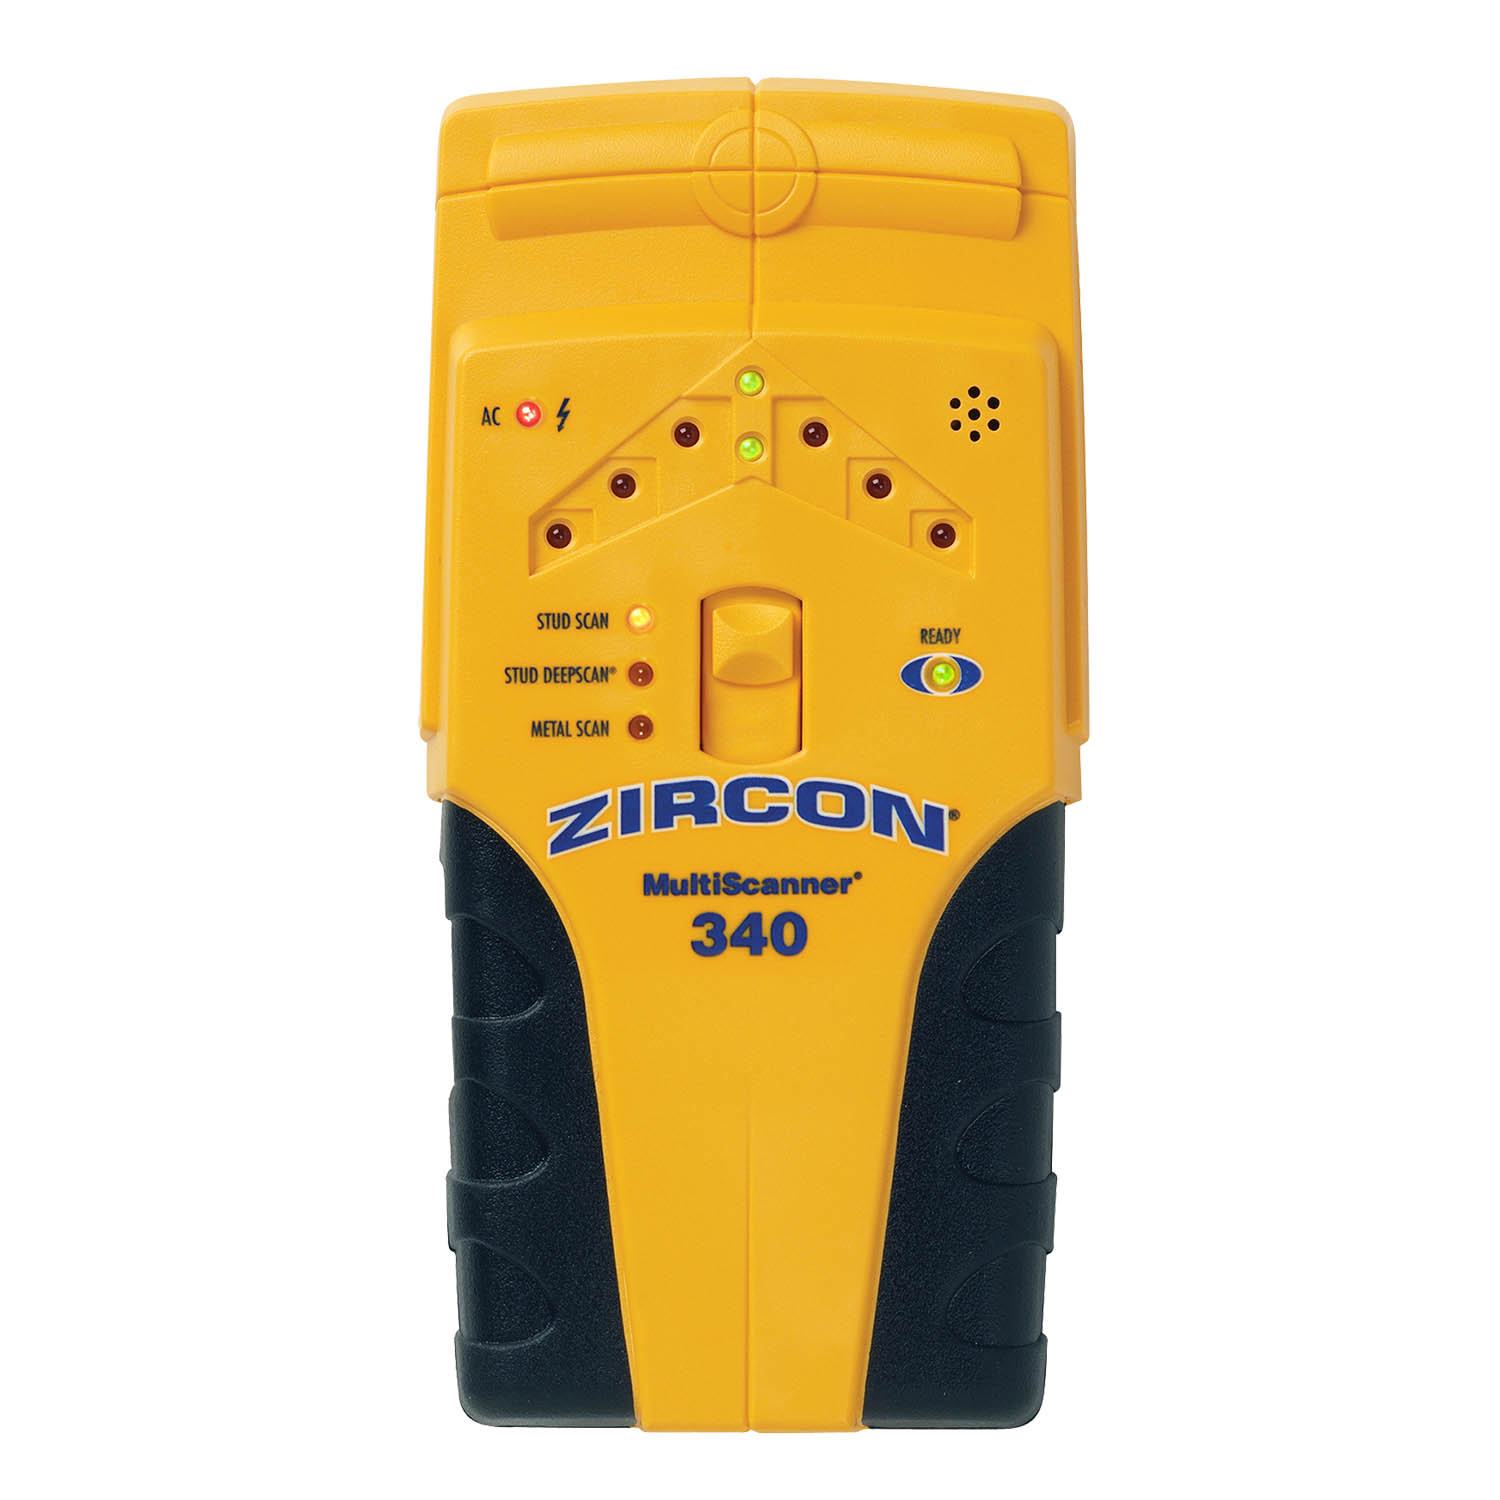 Zircon MultiScanner 340